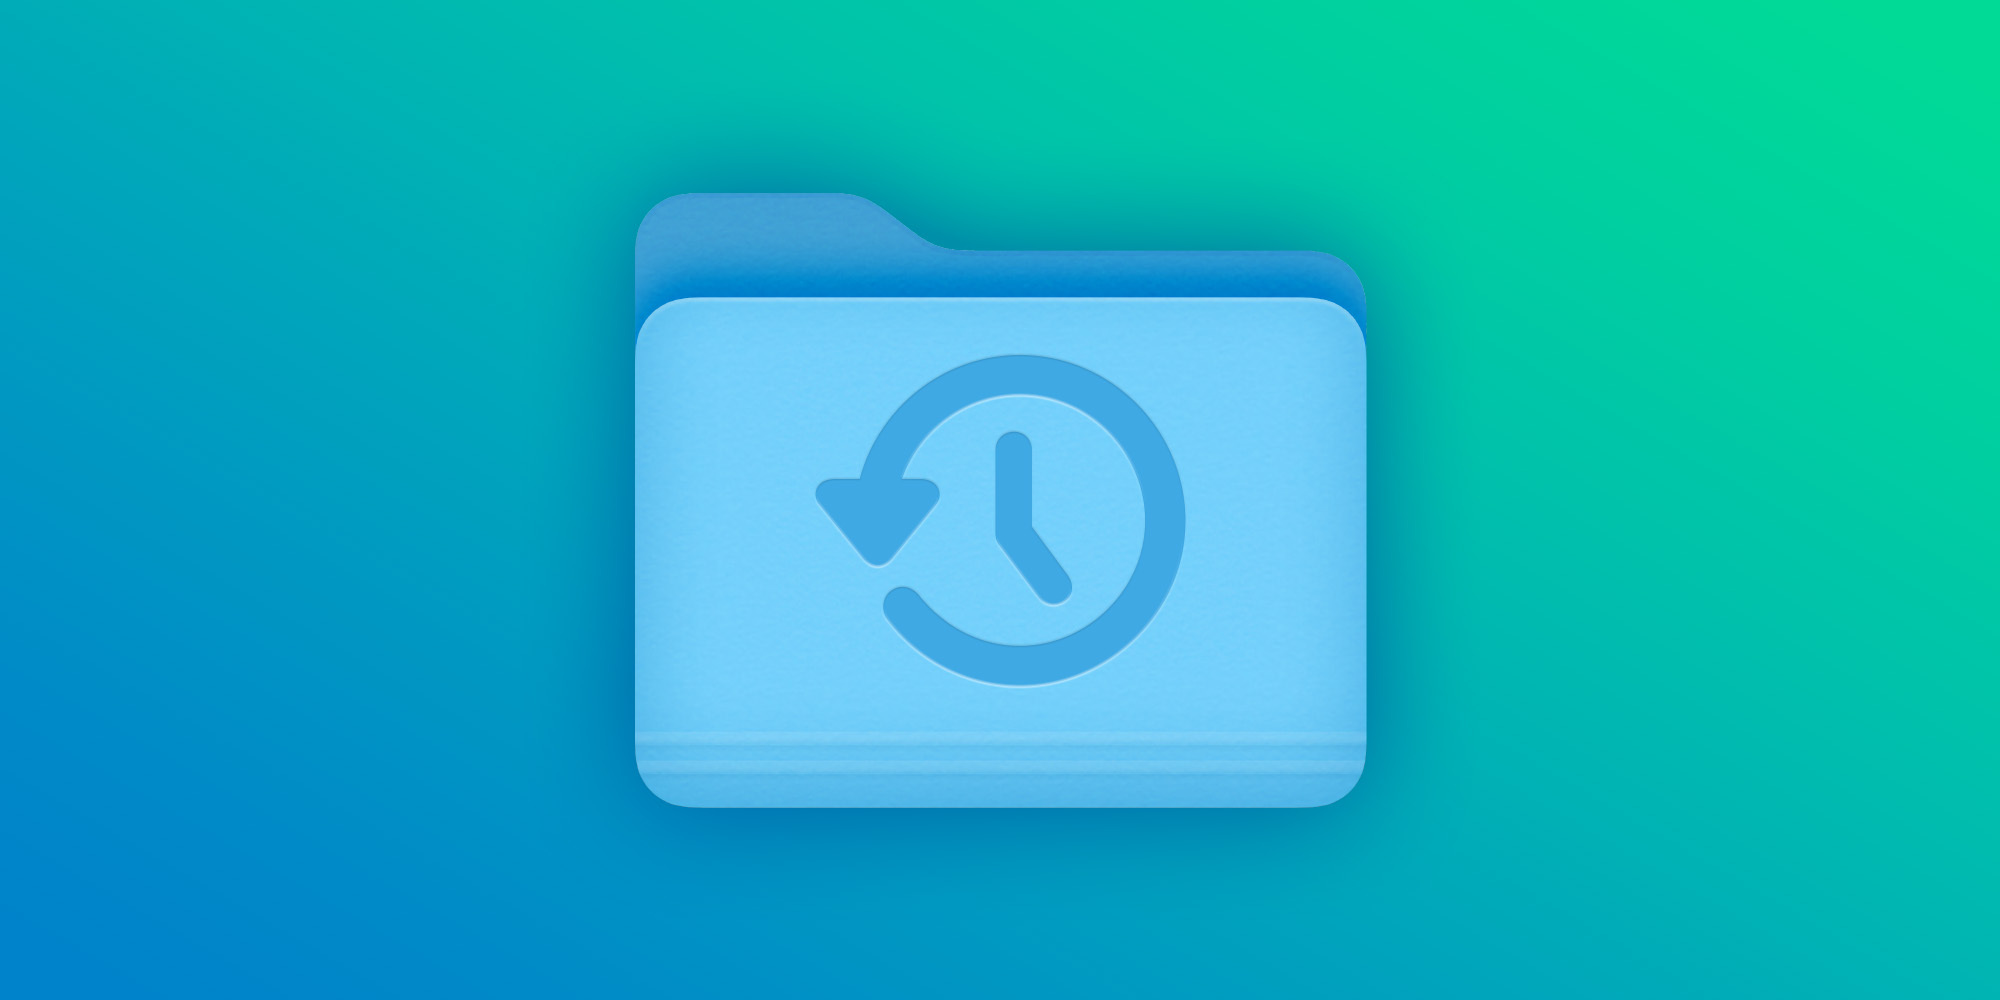 پوشه مشترک را برای پشتیبان گیری Mac Time Machine پیکربندی کنید